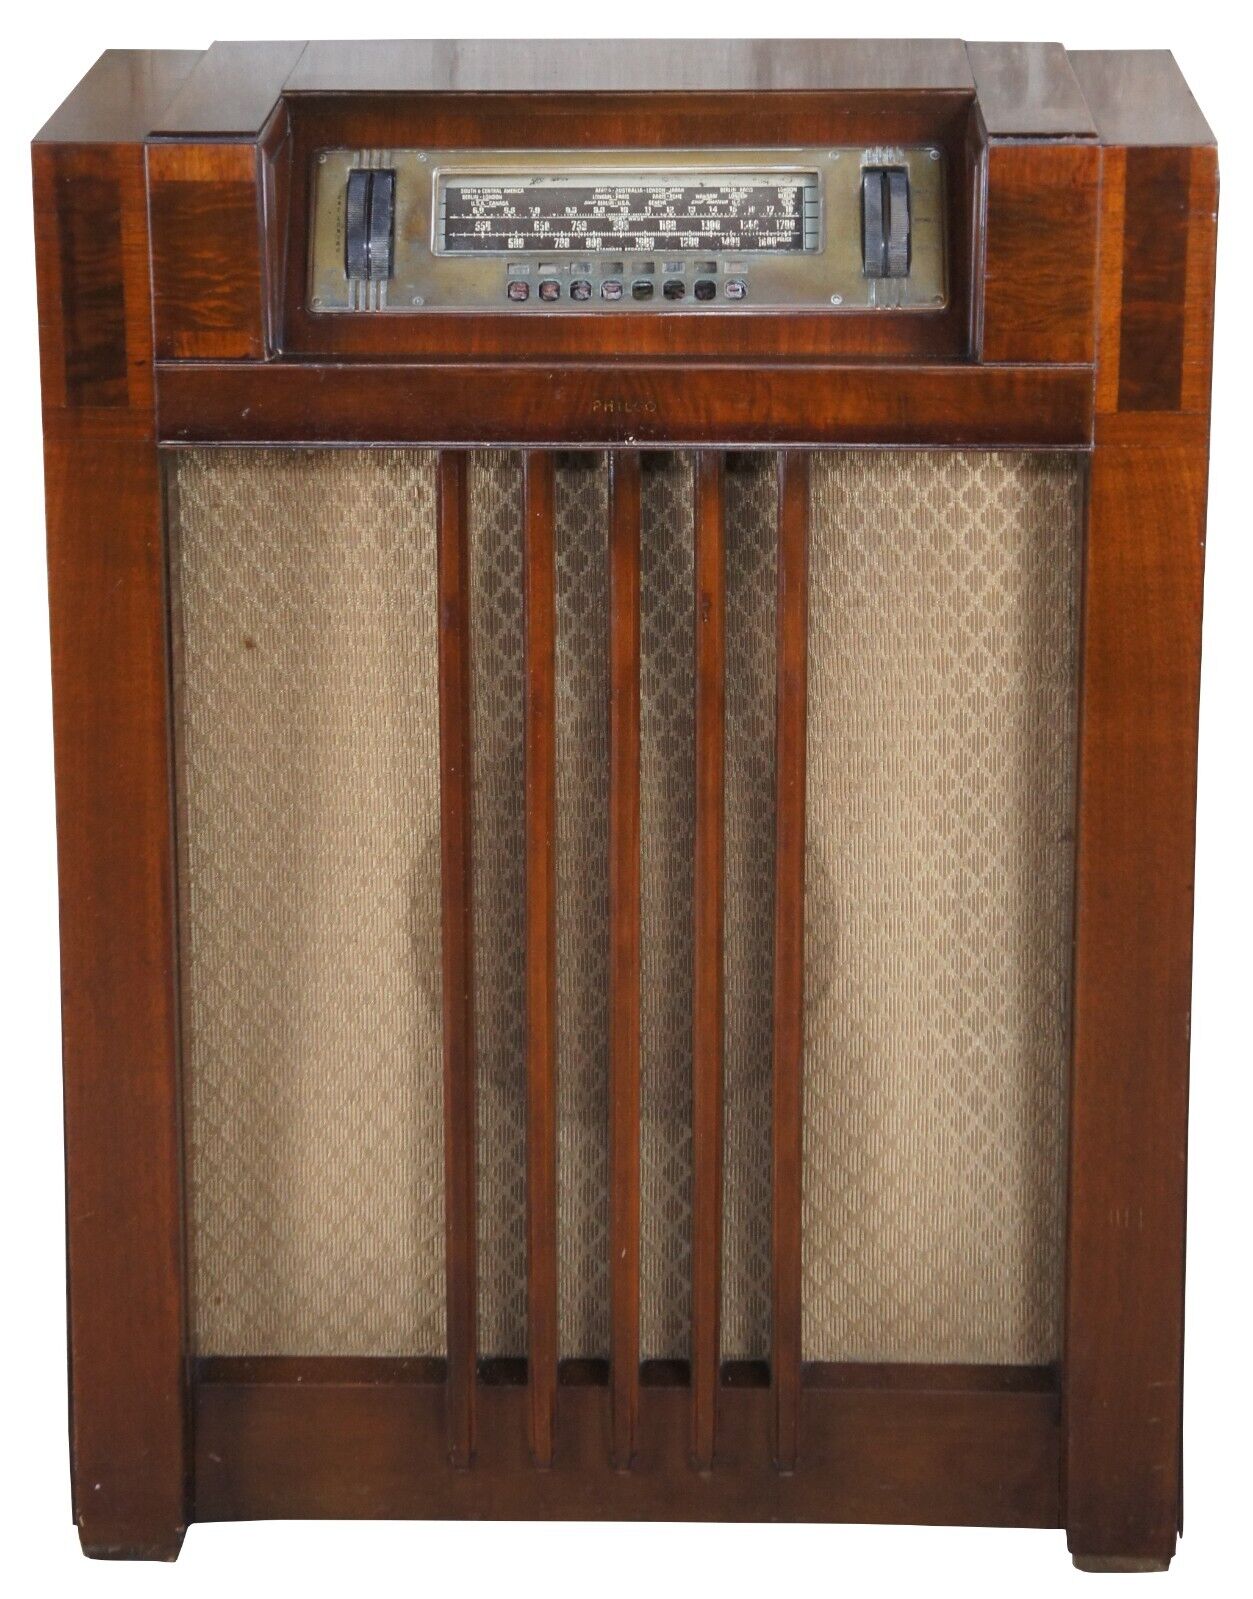 Antique Art Deco Pre War Philco 1939 Console Tube Radio Walnut Case 39-40